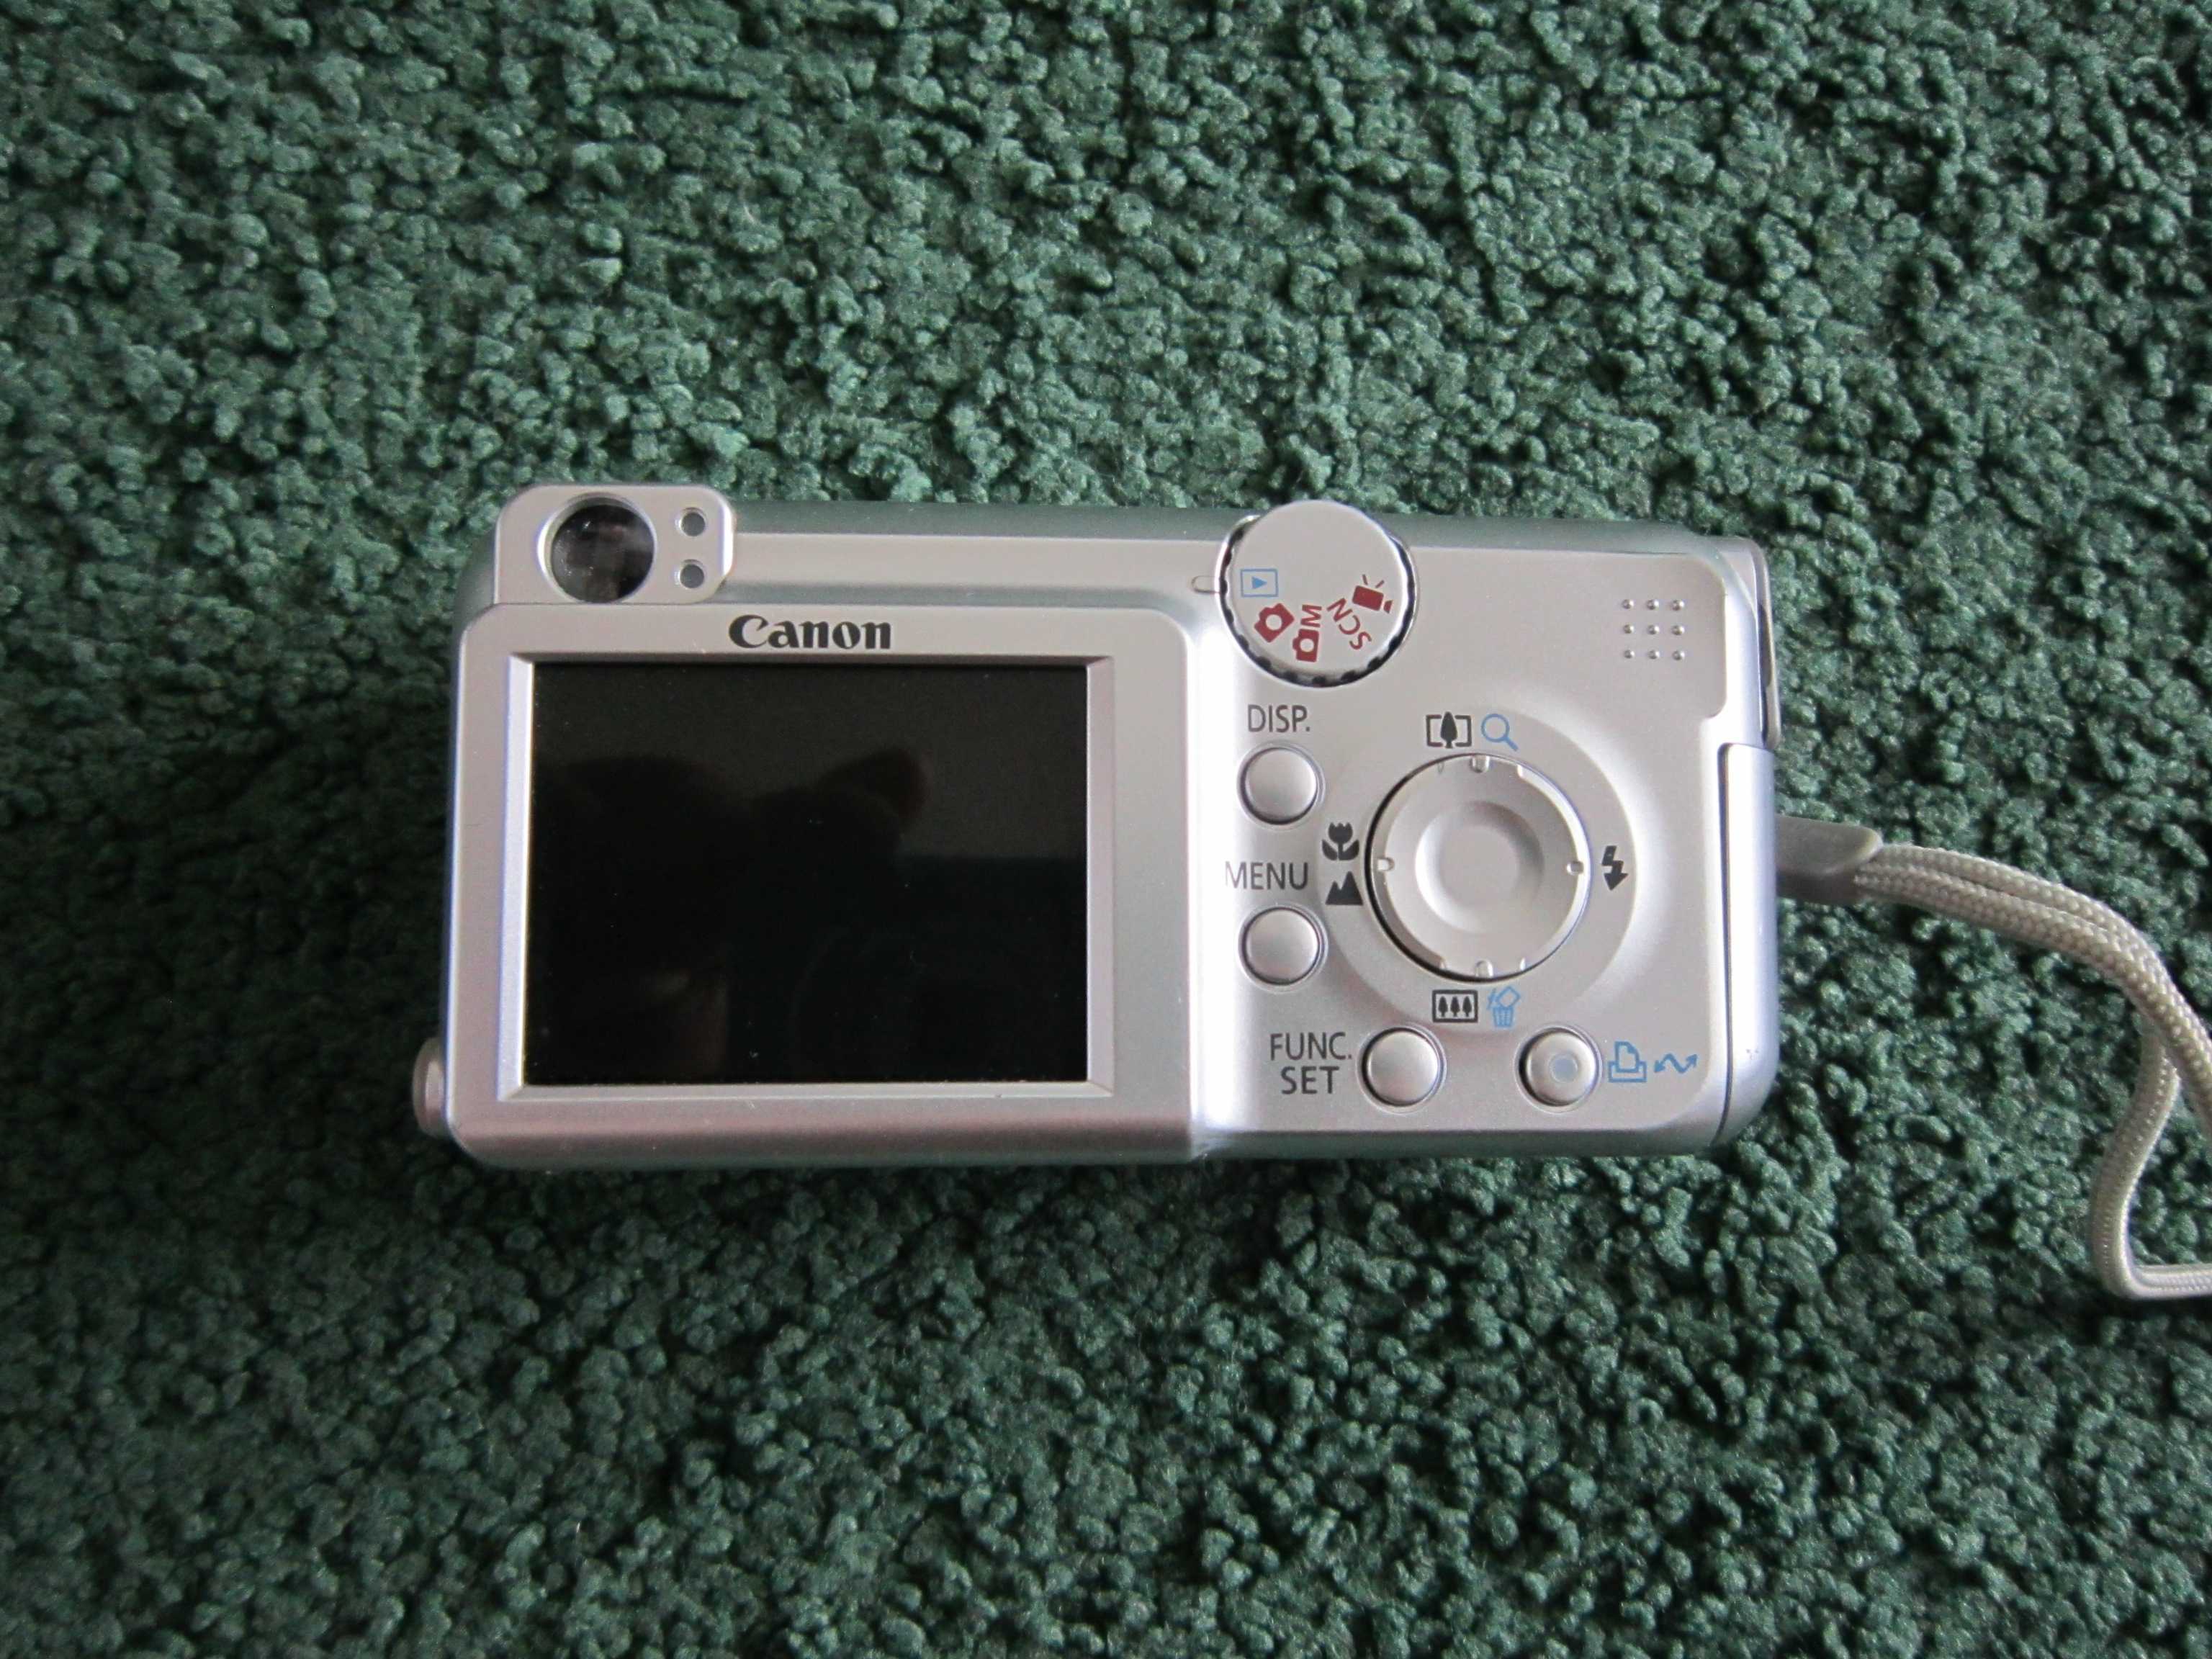 Цифровой фотоаппарат Canon PowerShot A1300 - подробные характеристики обзоры видео фото Цены в интернет-магазинах где можно купить цифровую фотоаппарат Canon PowerShot A1300